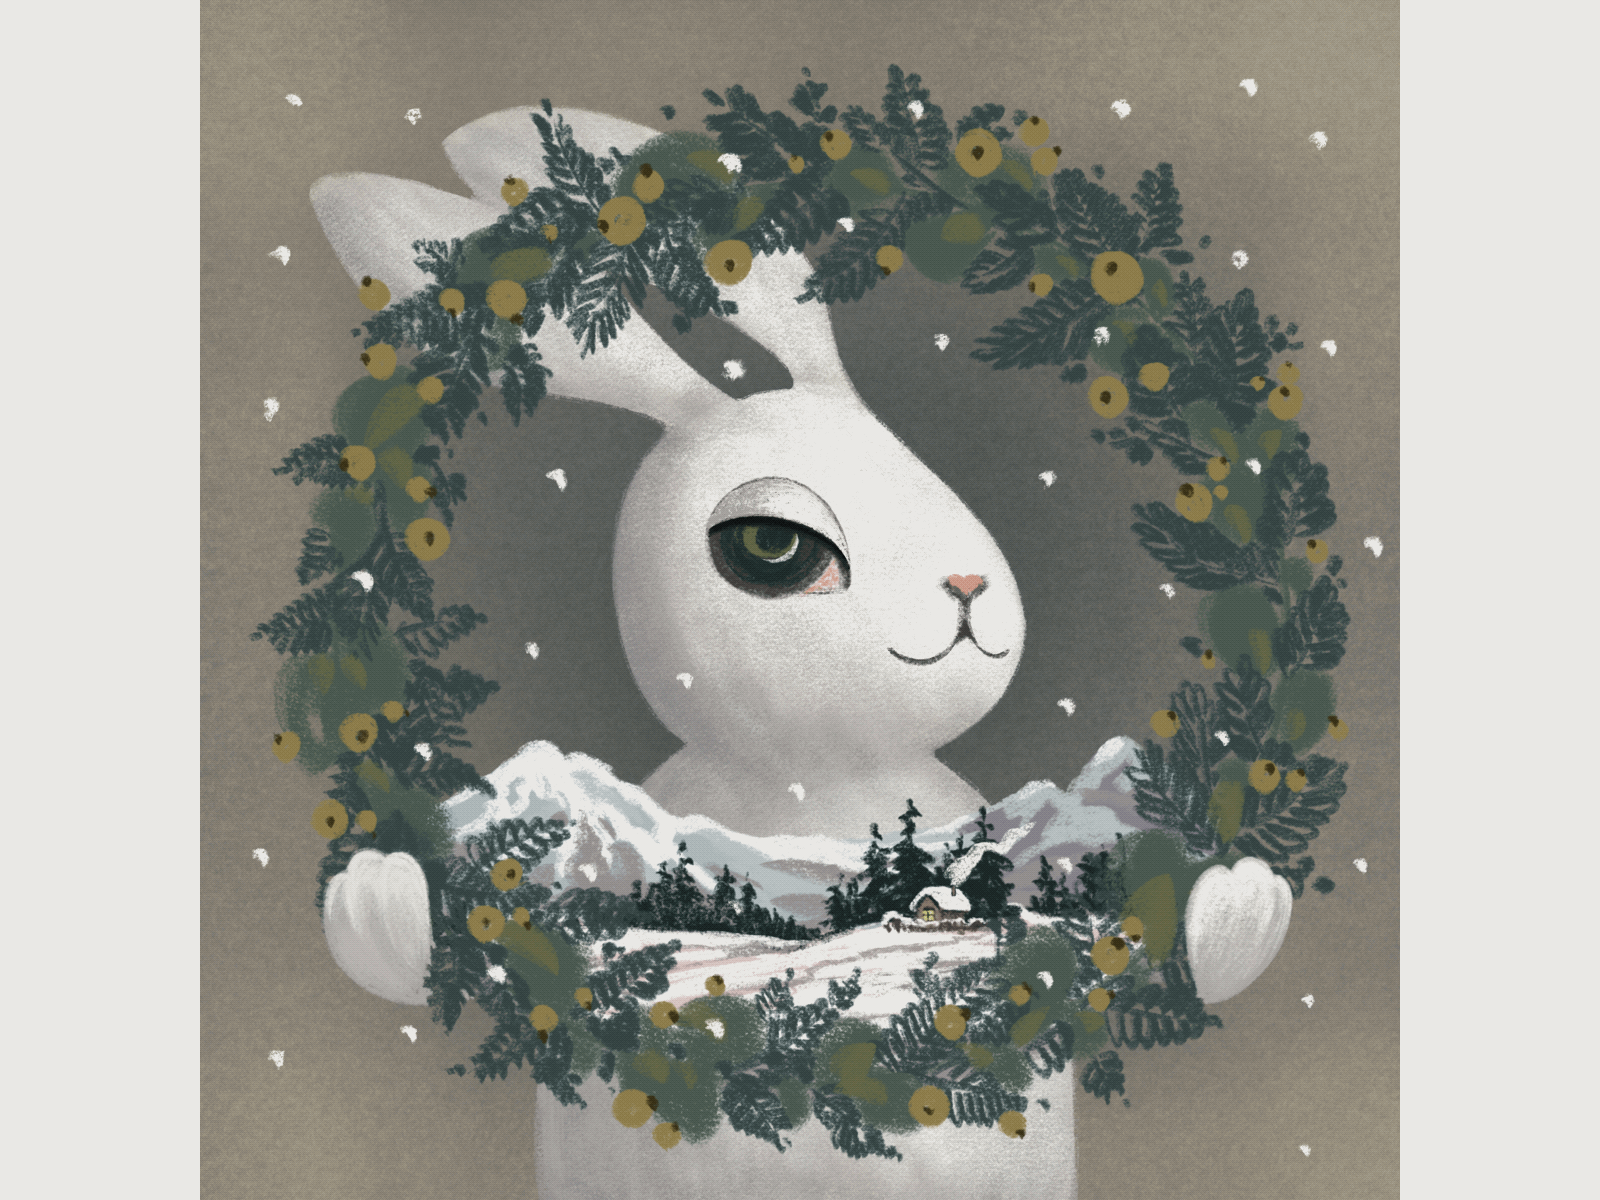 Christmas bunny